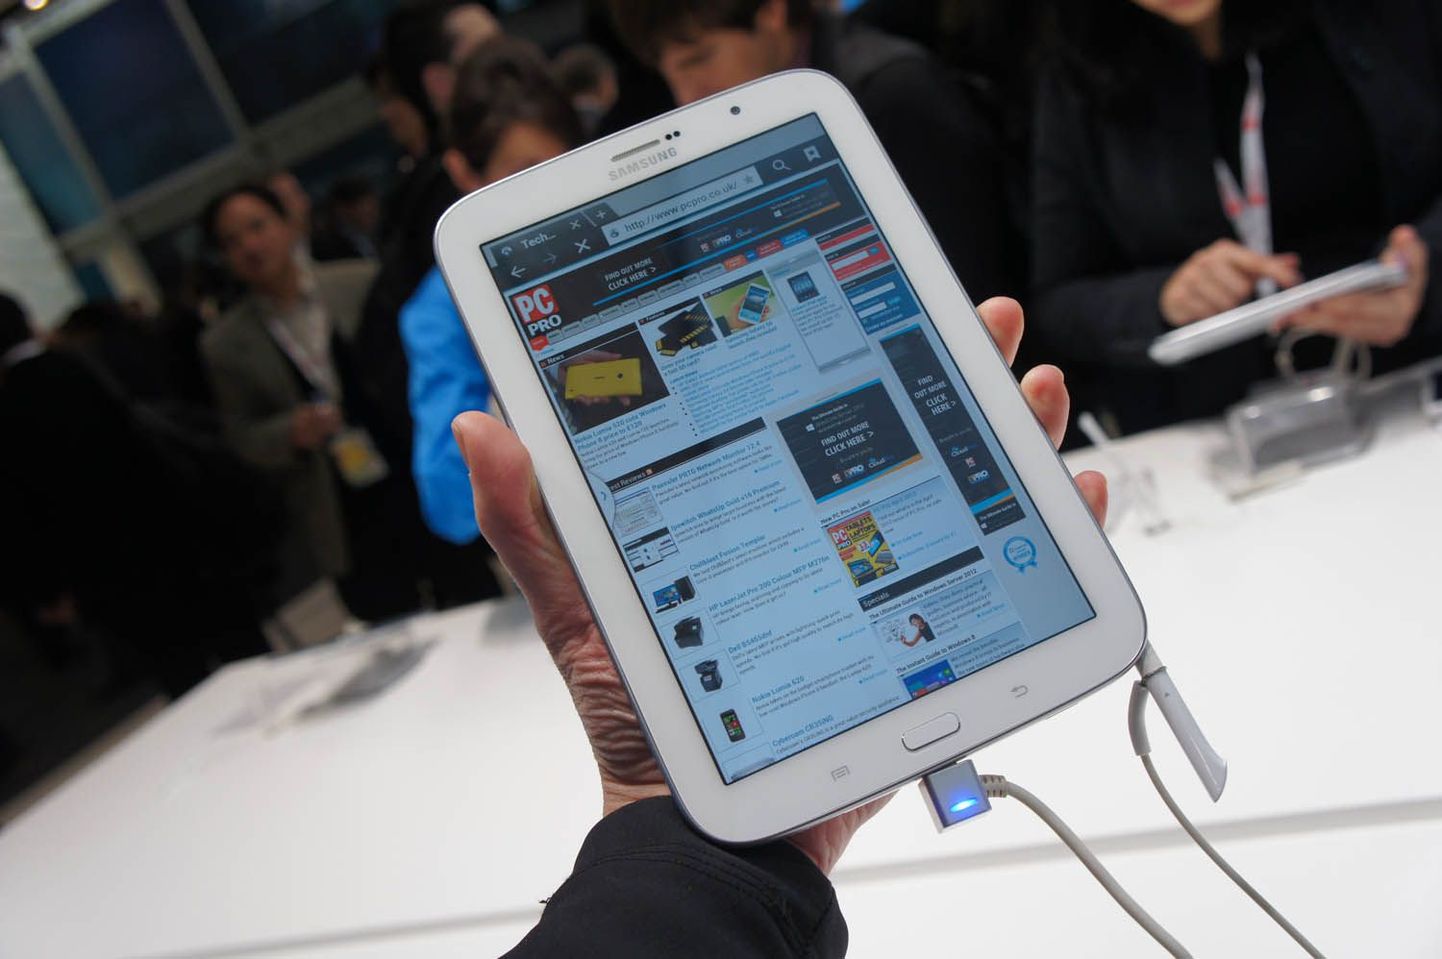 5. Samsung Galaxy Note 8.0
CNETi ajakirjanike väitel kõige innovatiivsema kasutajaliidesega tahvelarvuti. Hind Euroopas 399 eurot.